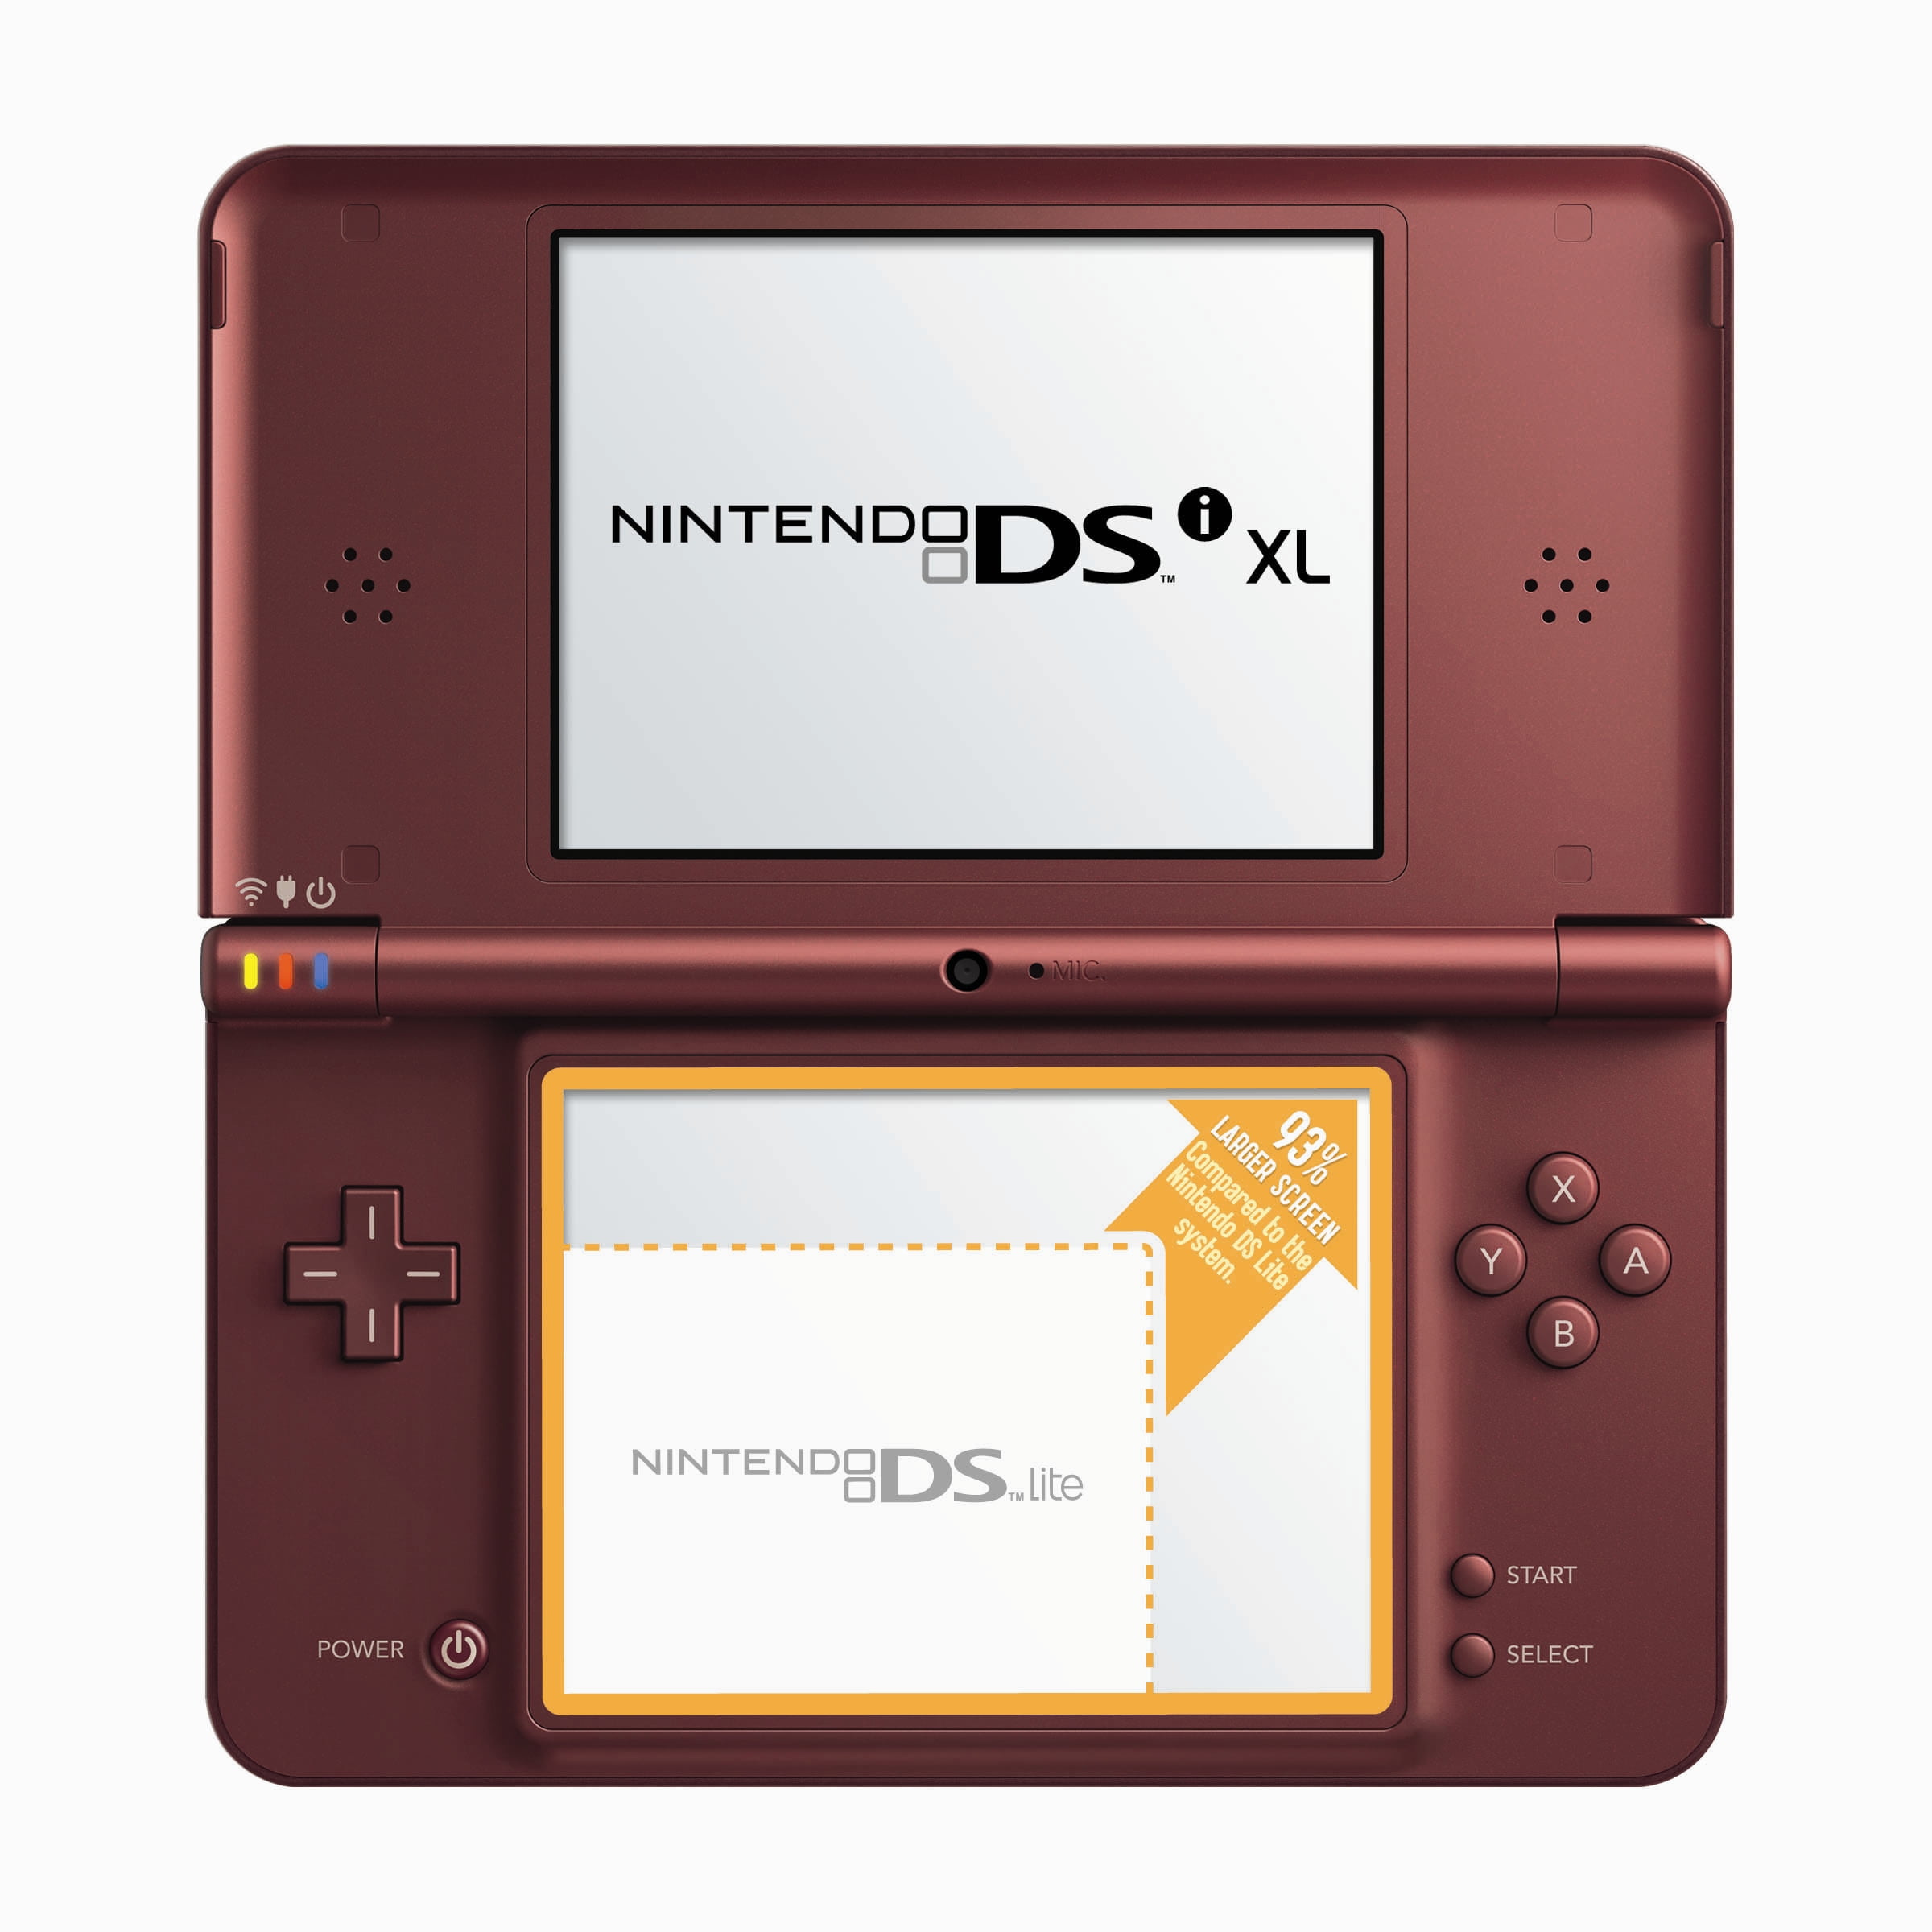 Nintendo DS XL. Нинтендо DSI. Nintendo DSI XL Red. Nintendo DS Lite. Какую nintendo выбрать